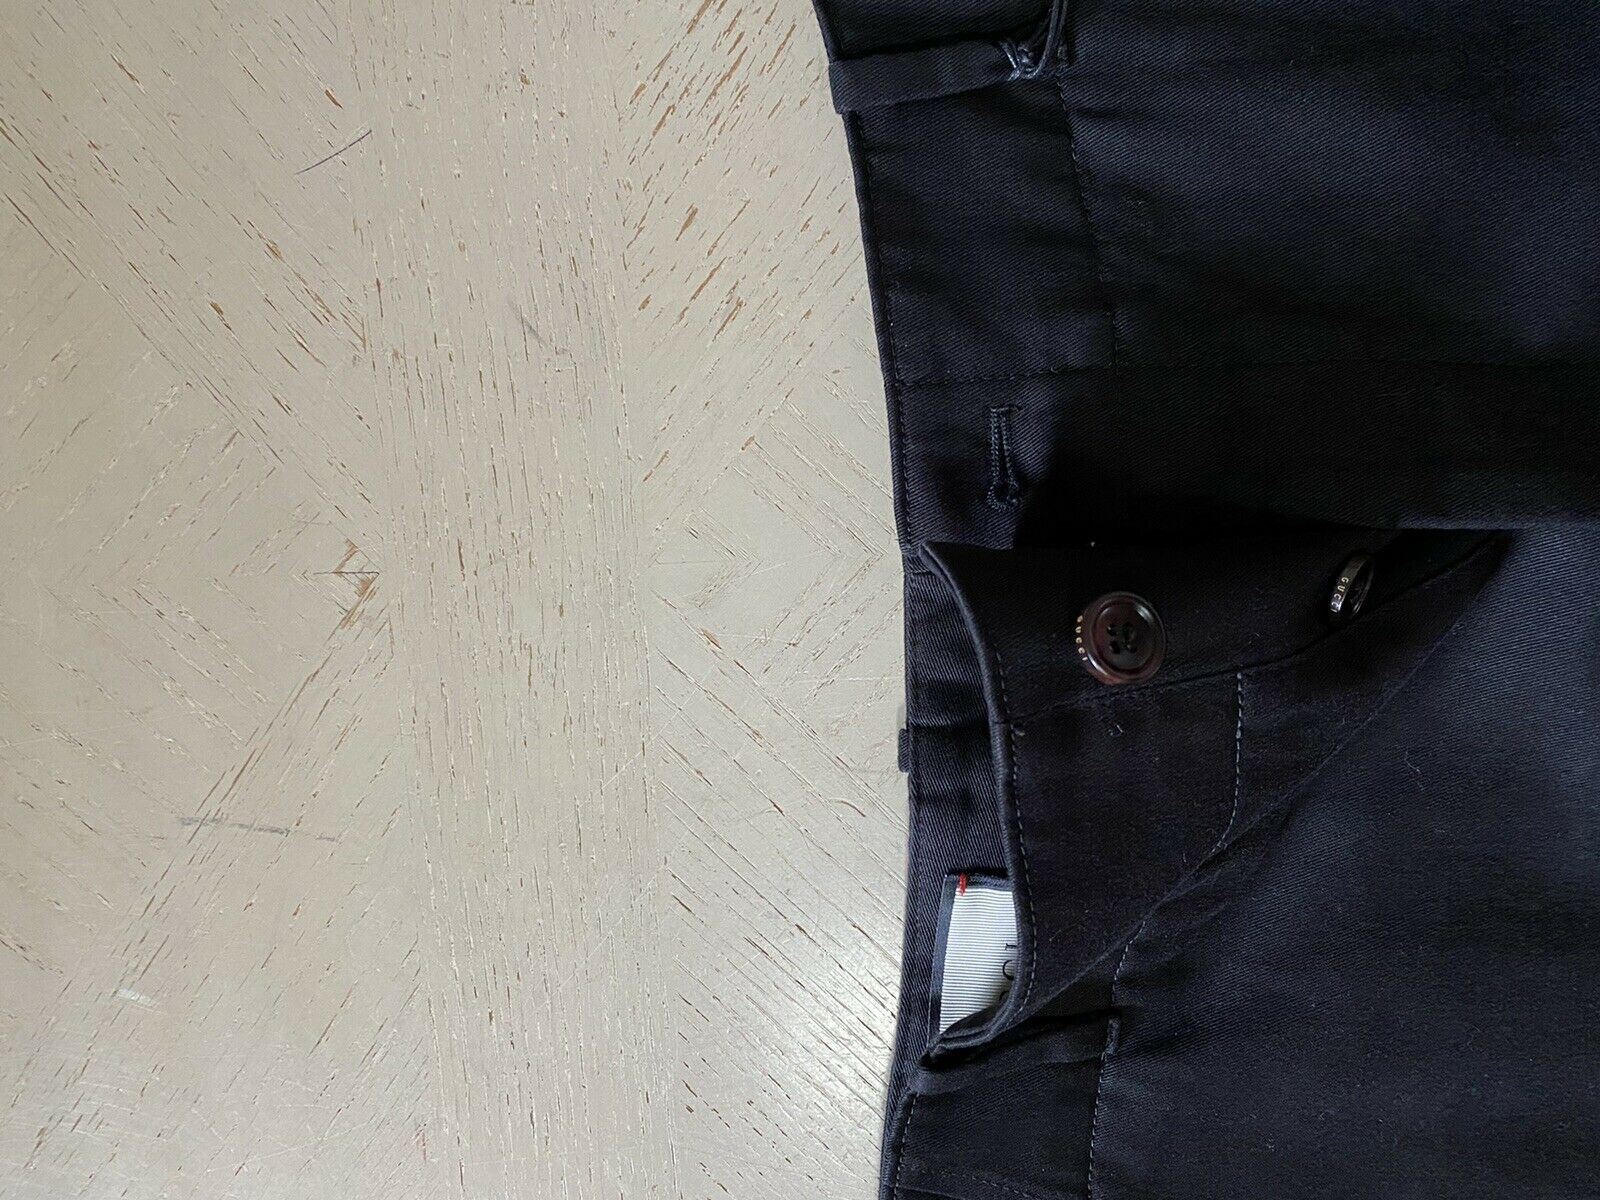 Мужские хлопковые короткие брюки в стиле милитари NWT Gucci, черные, размер 32, США, Италия